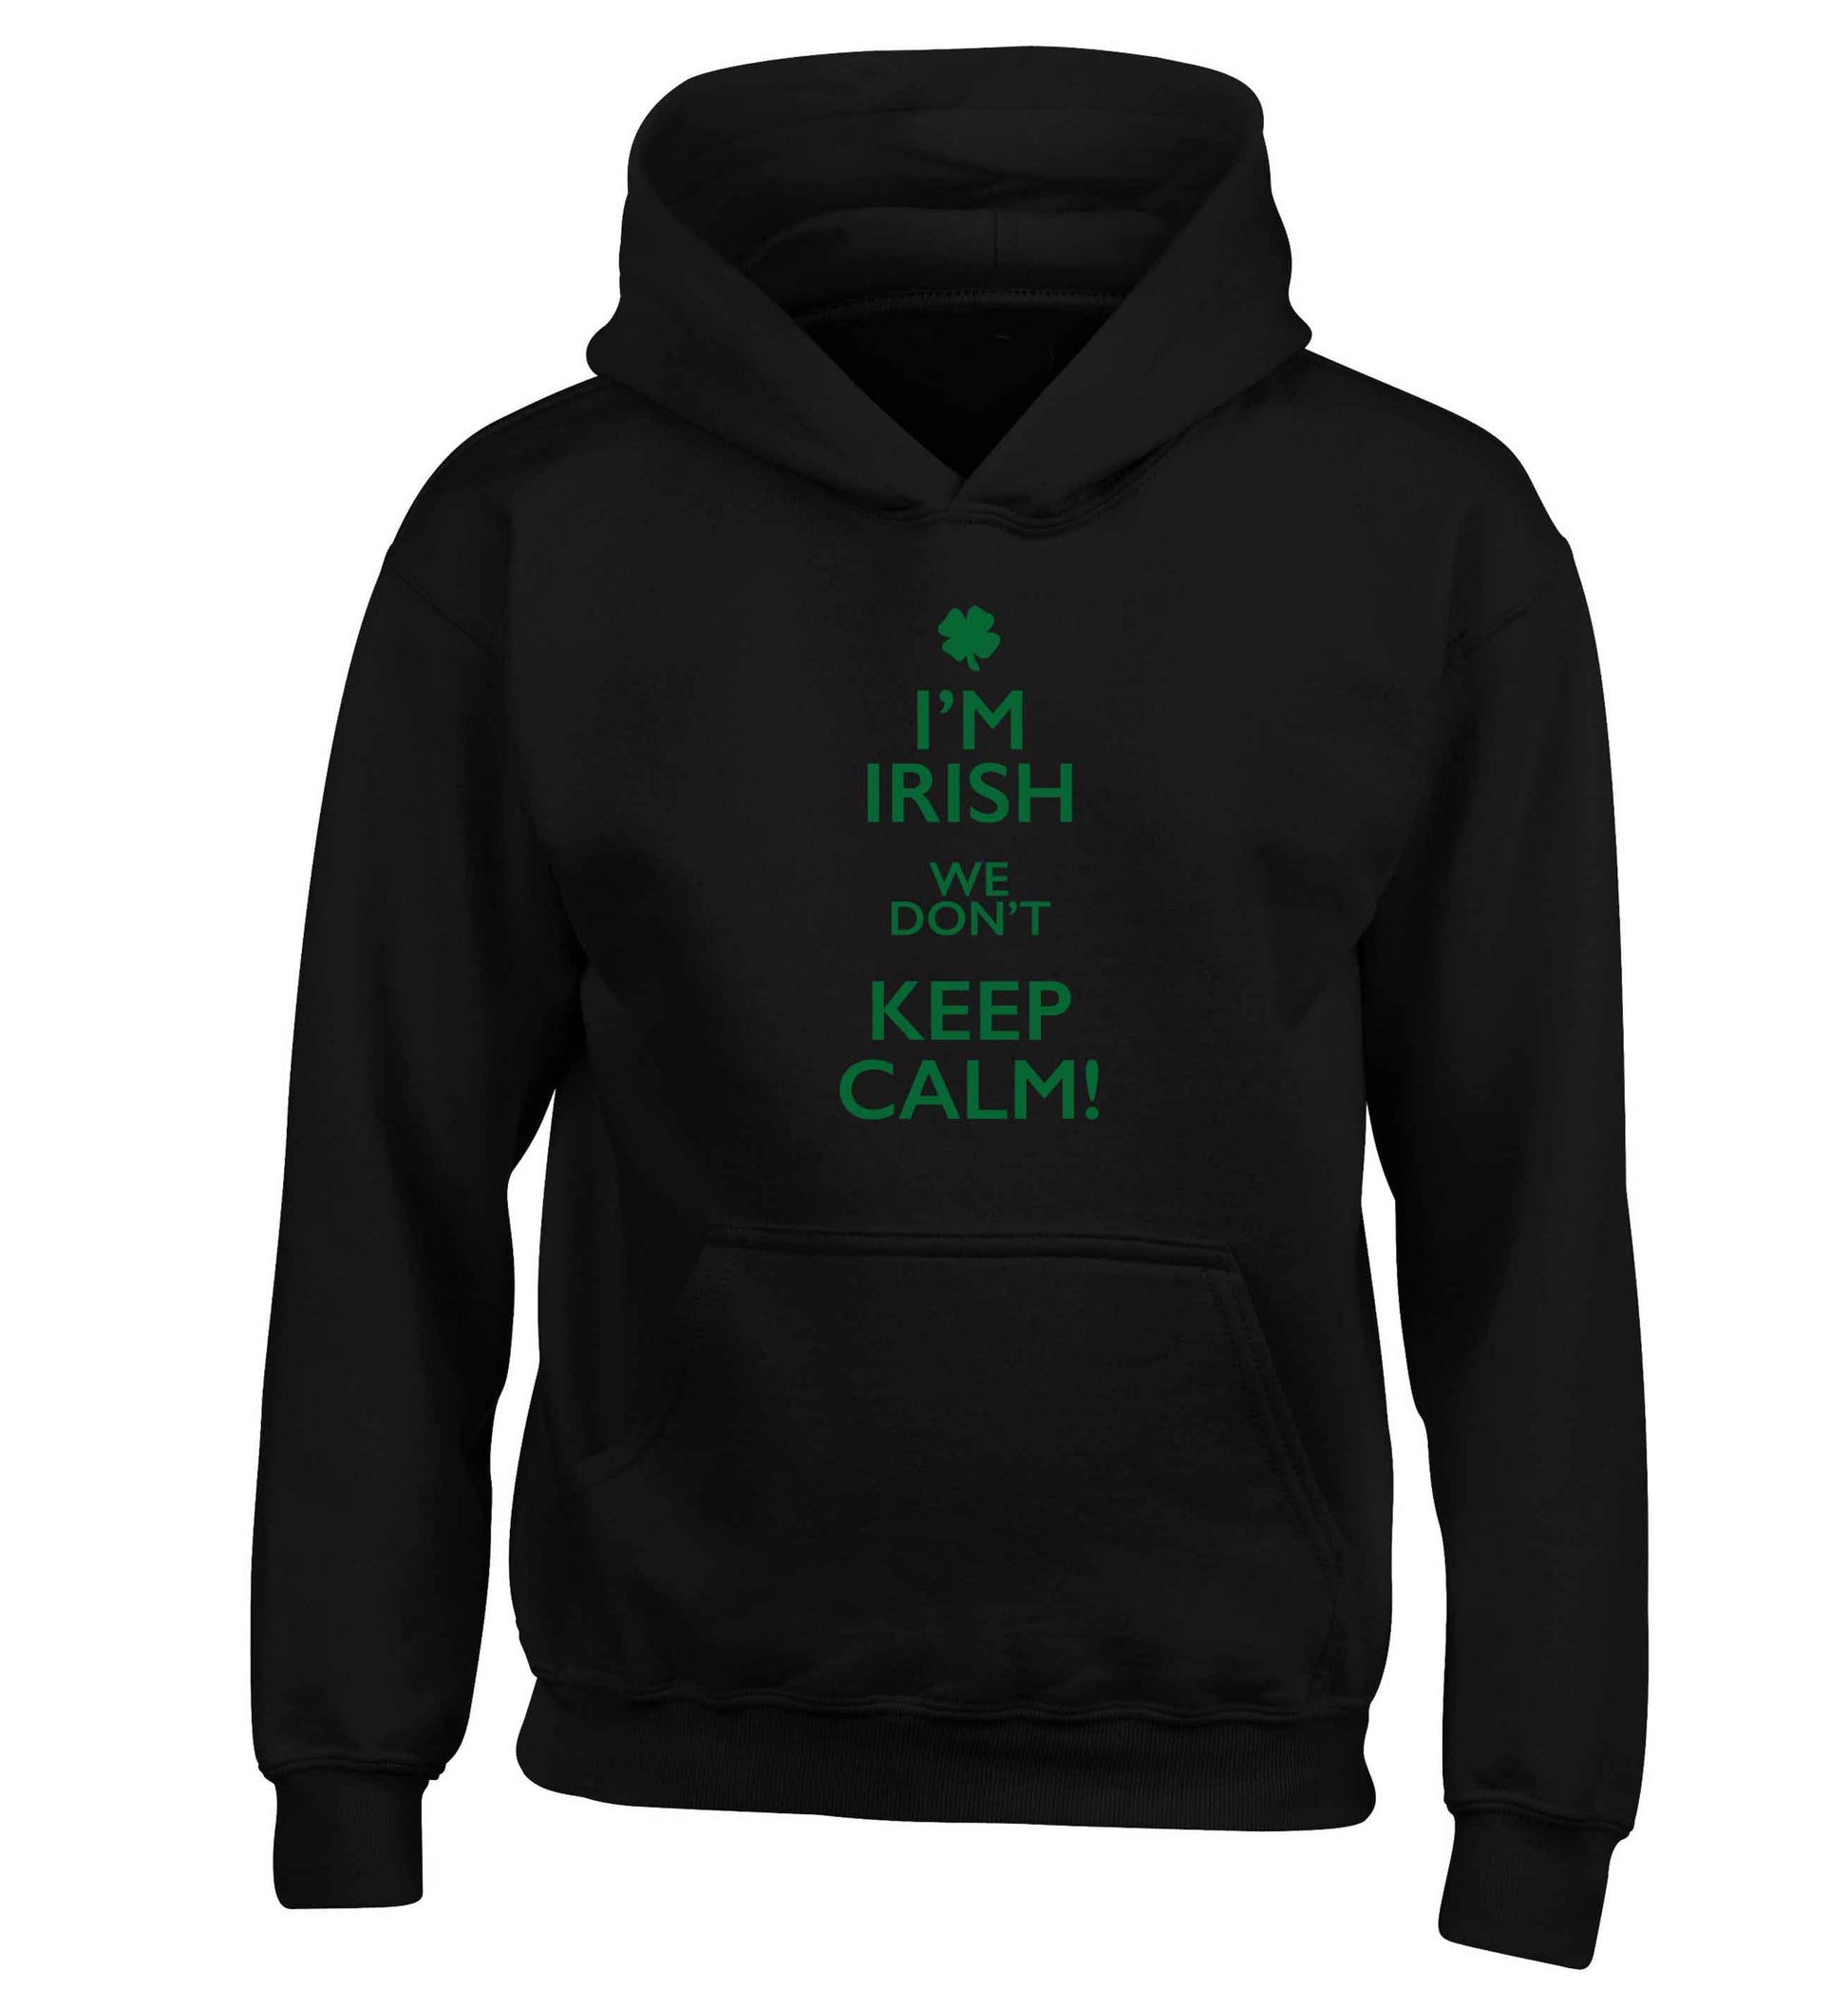 I'm Irish we don't keep calm children's black hoodie 12-13 Years